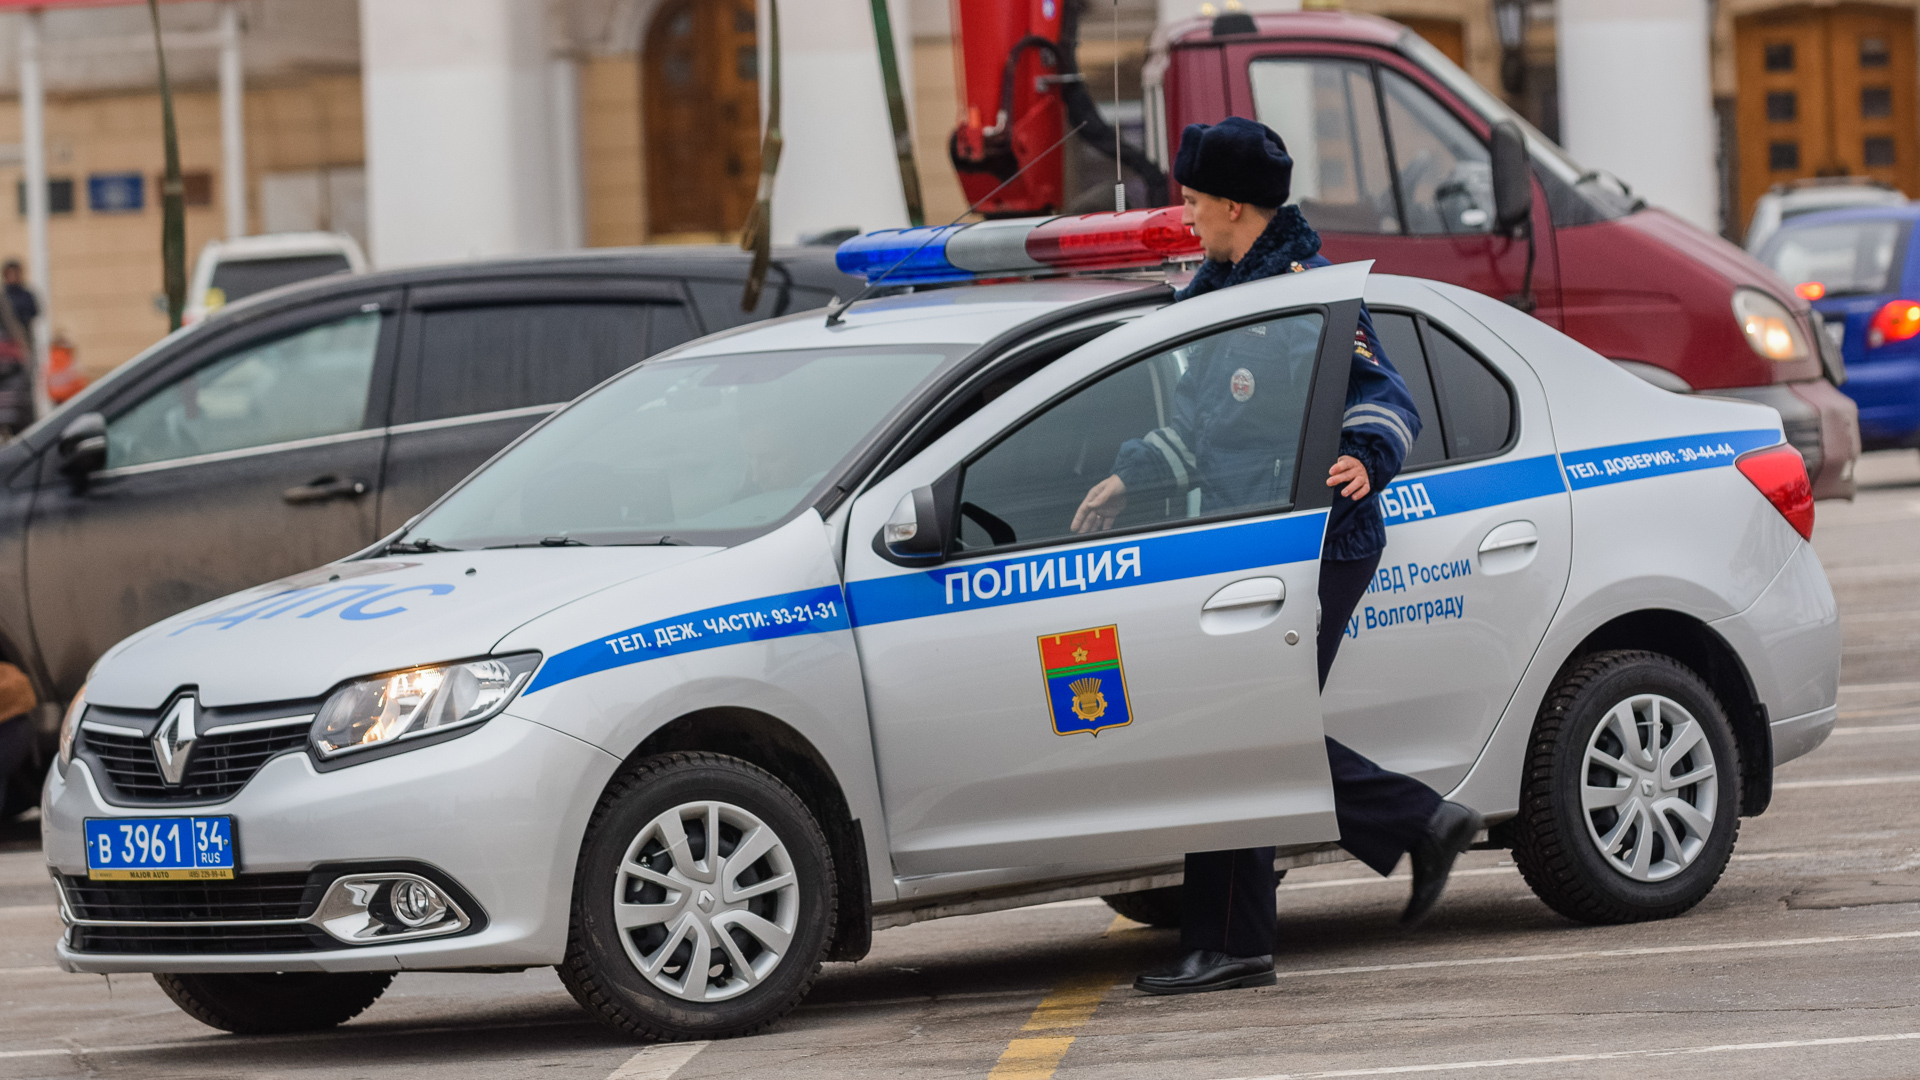 Тело пропавшего при странных обстоятельствах водителя на BMW найдено в Екатеринбурге